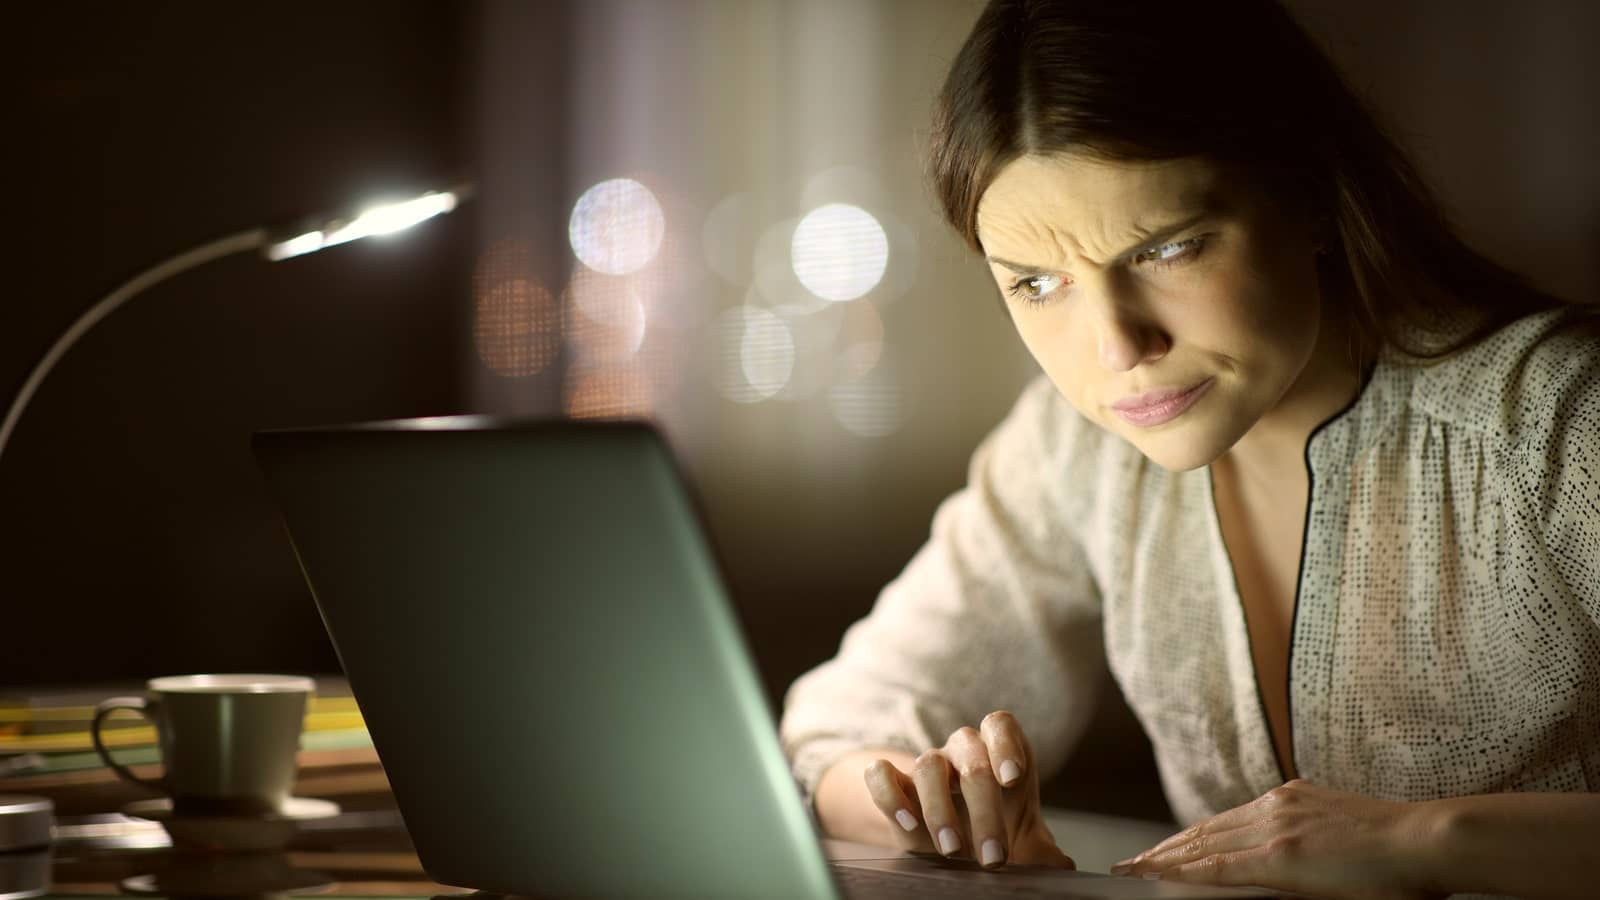 Eine Frau sitzt vor dem Laptop und starrt ihn verdächtig an.